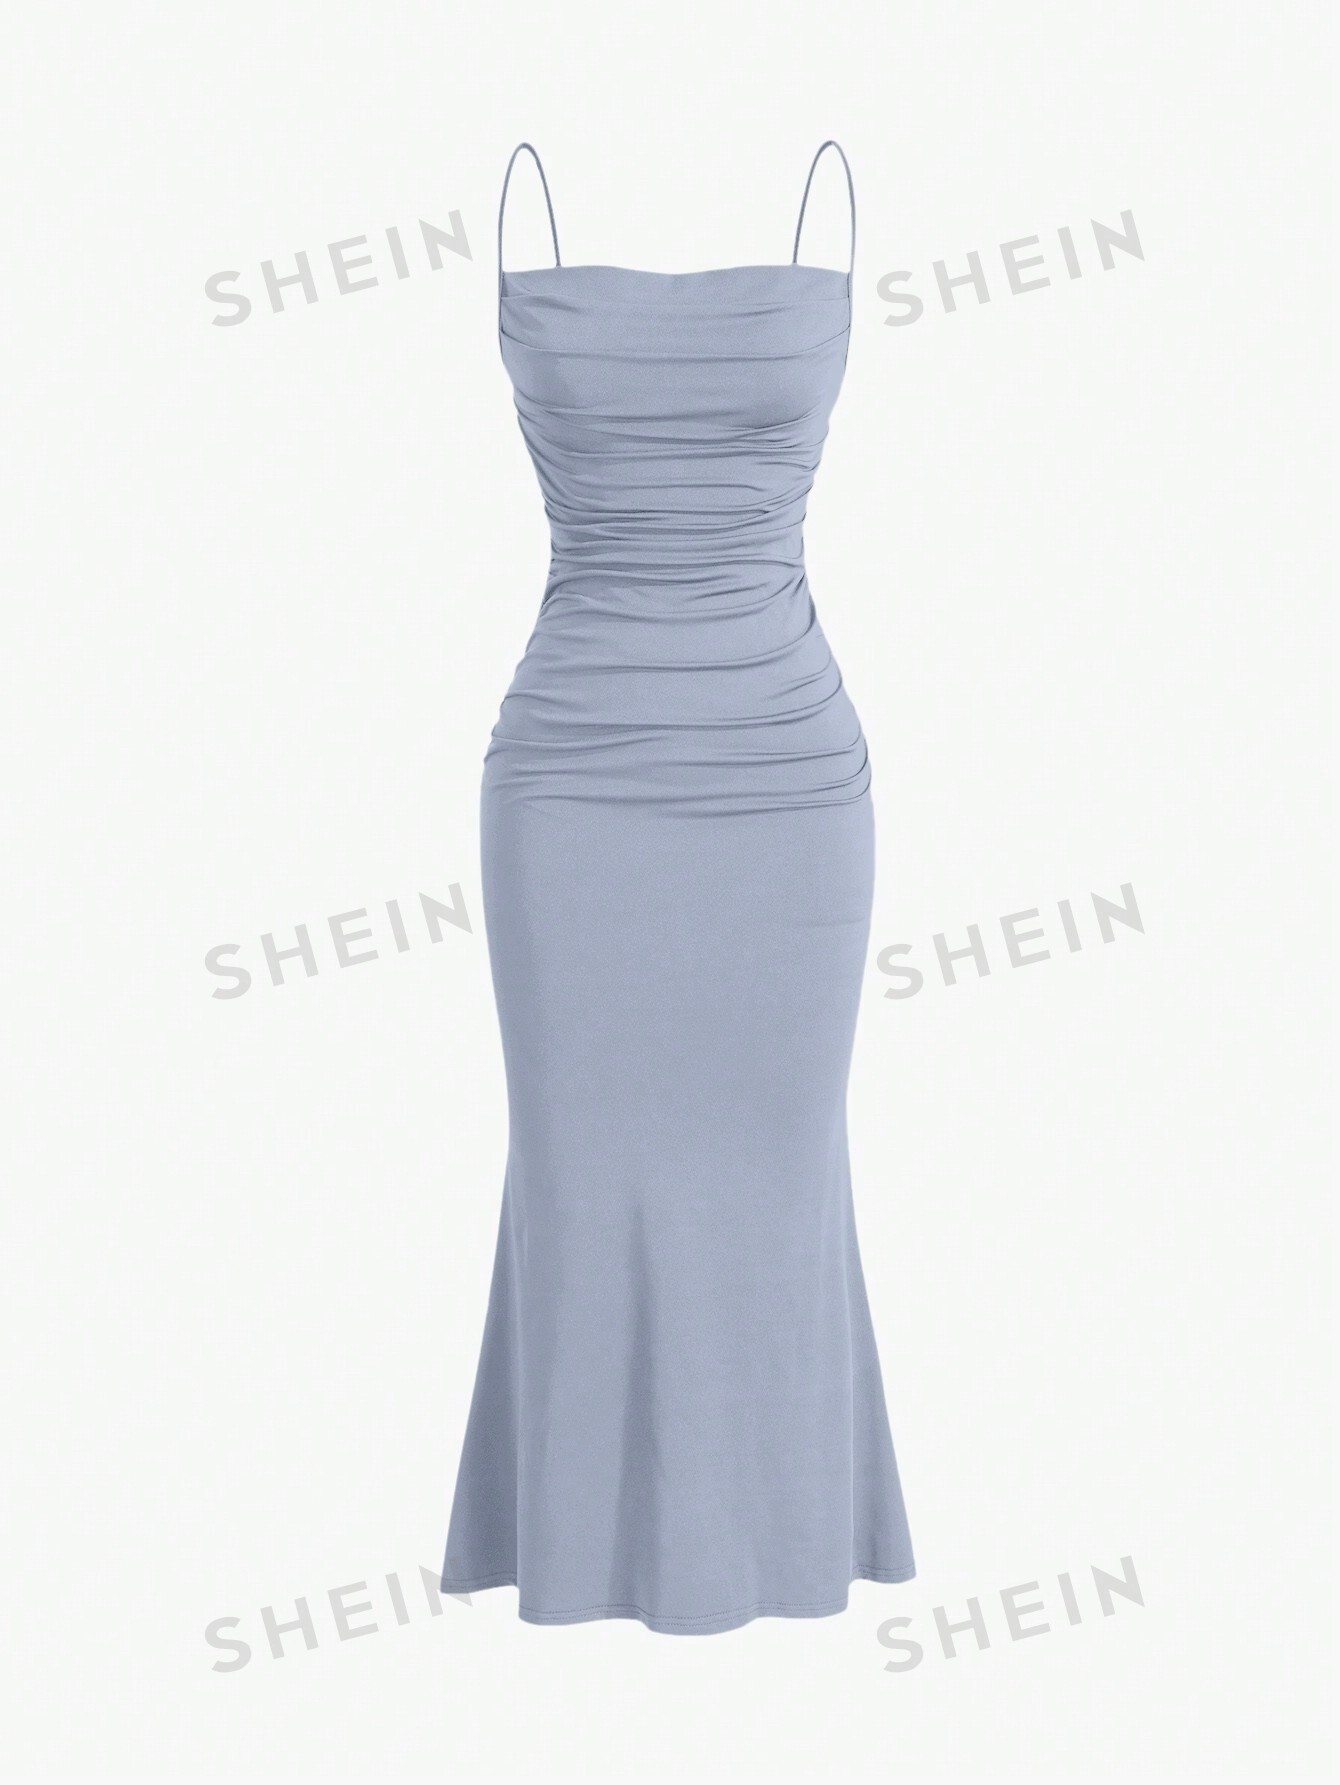 shein mod однотонное платье с гофрированной спиной и расклешенным подолом синий SHEIN MOD однотонное плиссированное платье с ремешками и подолом «рыбий хвост», светло-серый